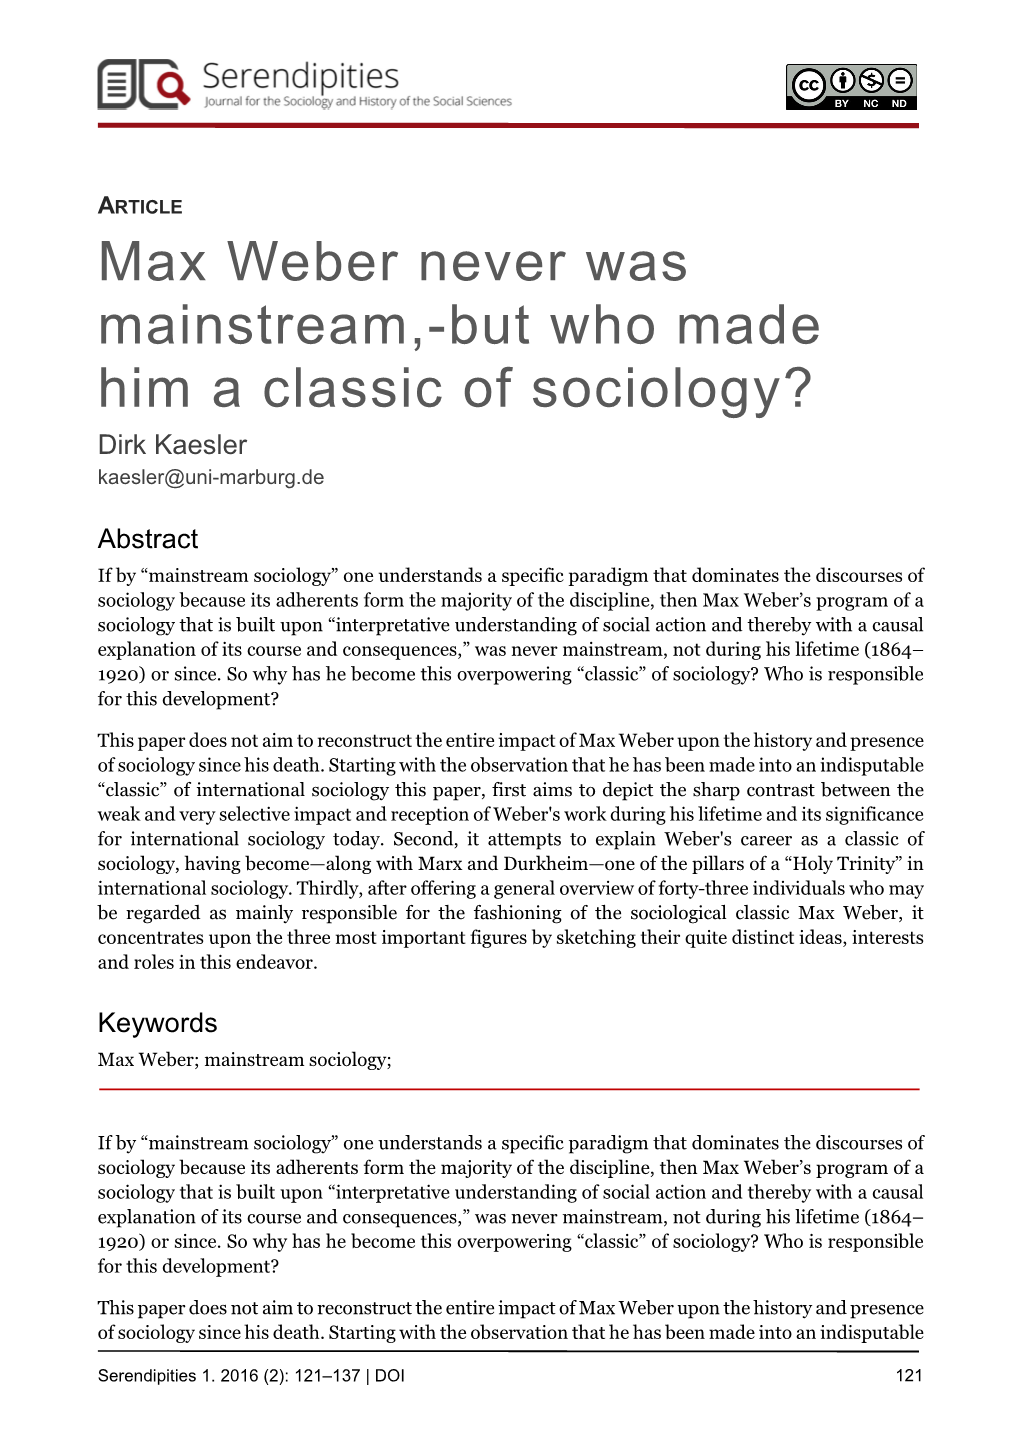 Max Weber Was Never Mainstream